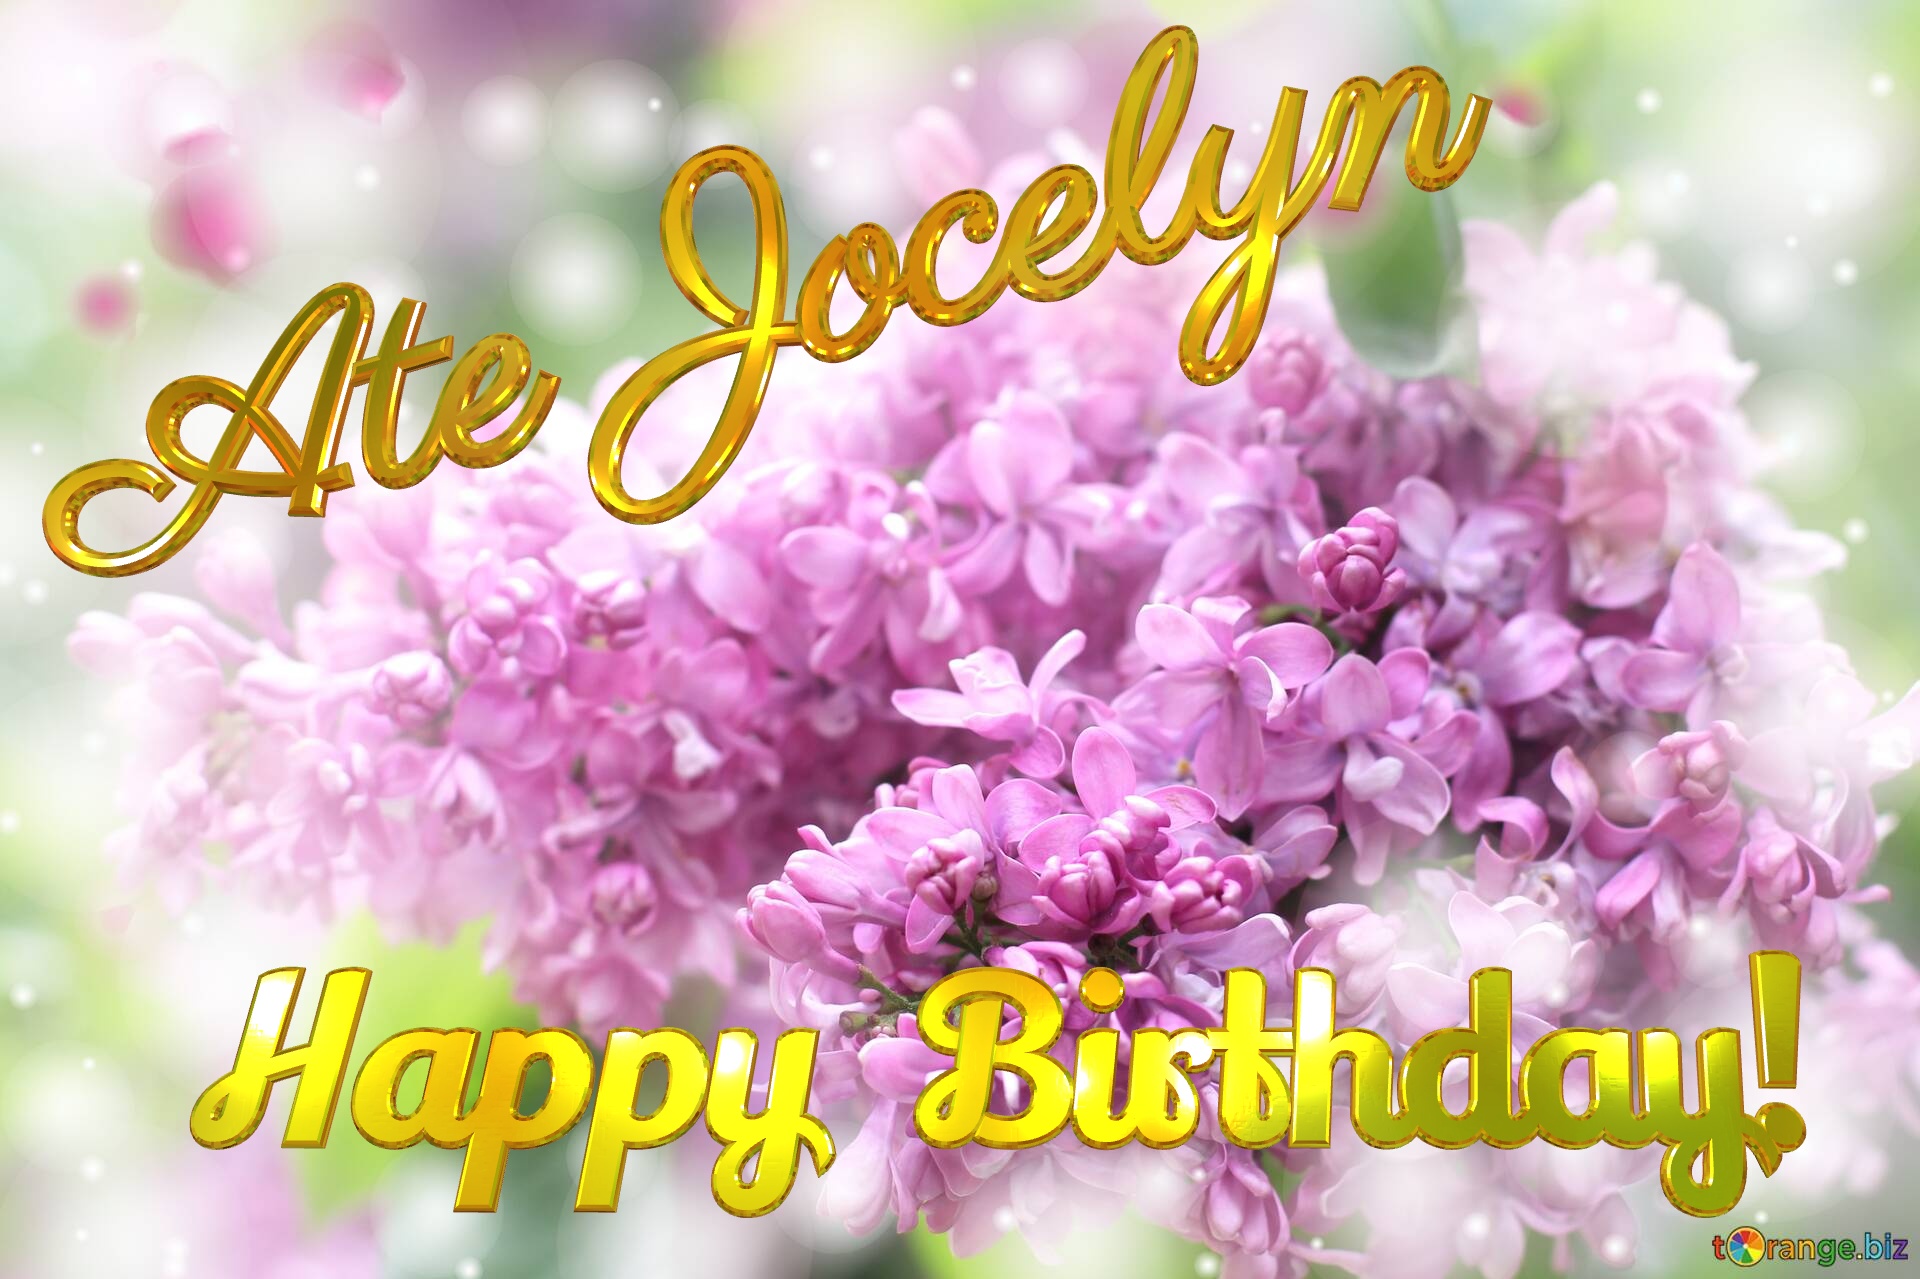 Happy  Birthday! Ate Jocelyn  Lilac №0